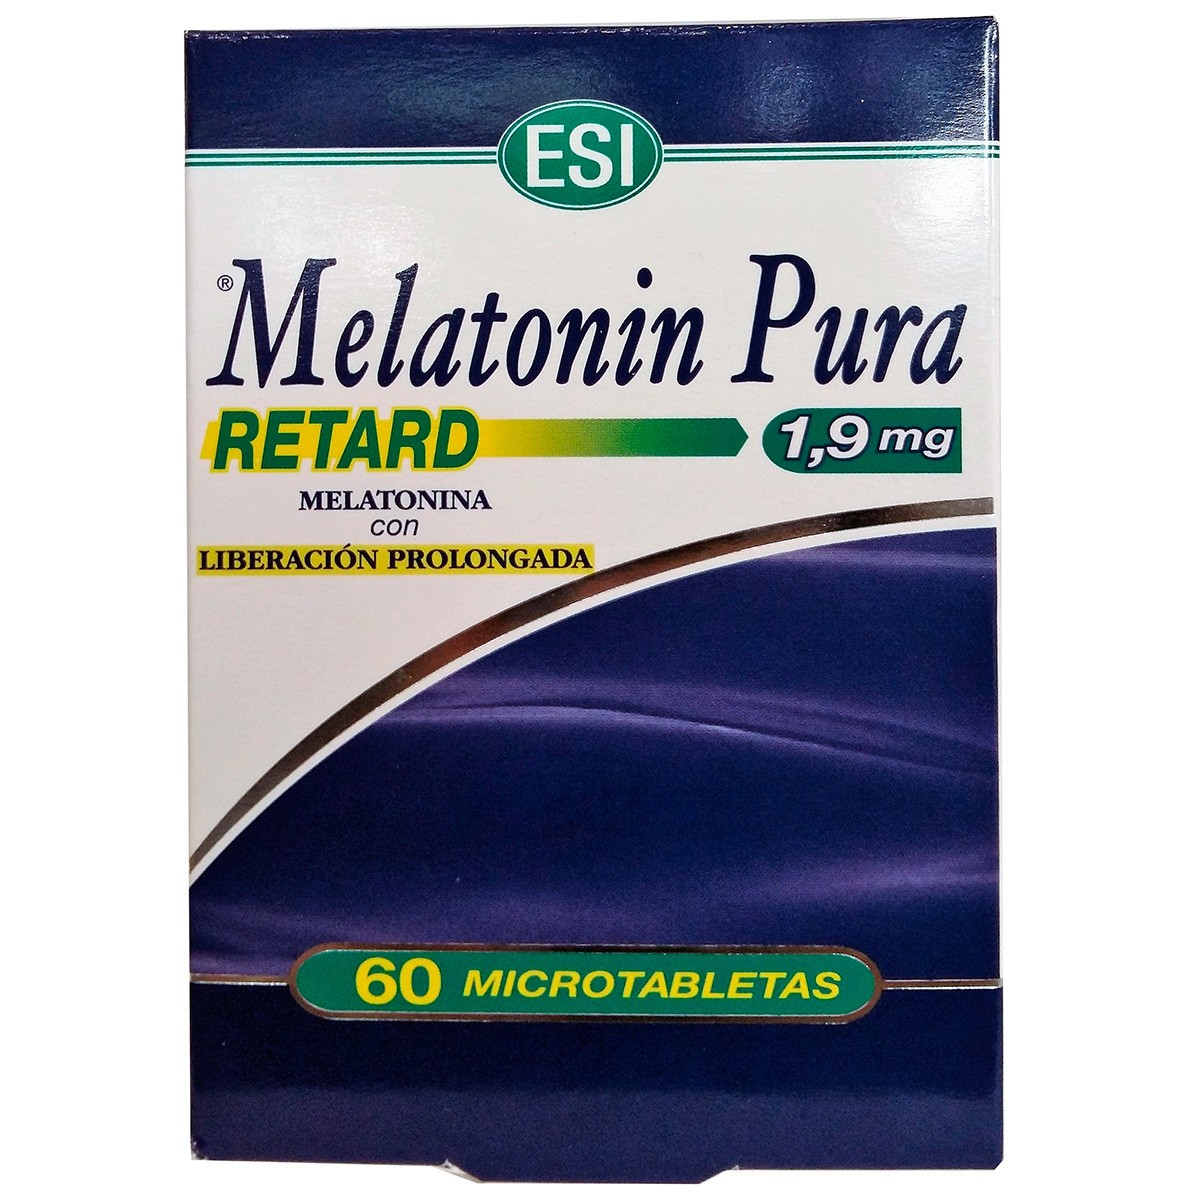 Imagen de Melatonin retard pura 1,9 mg 60 tabs trepa